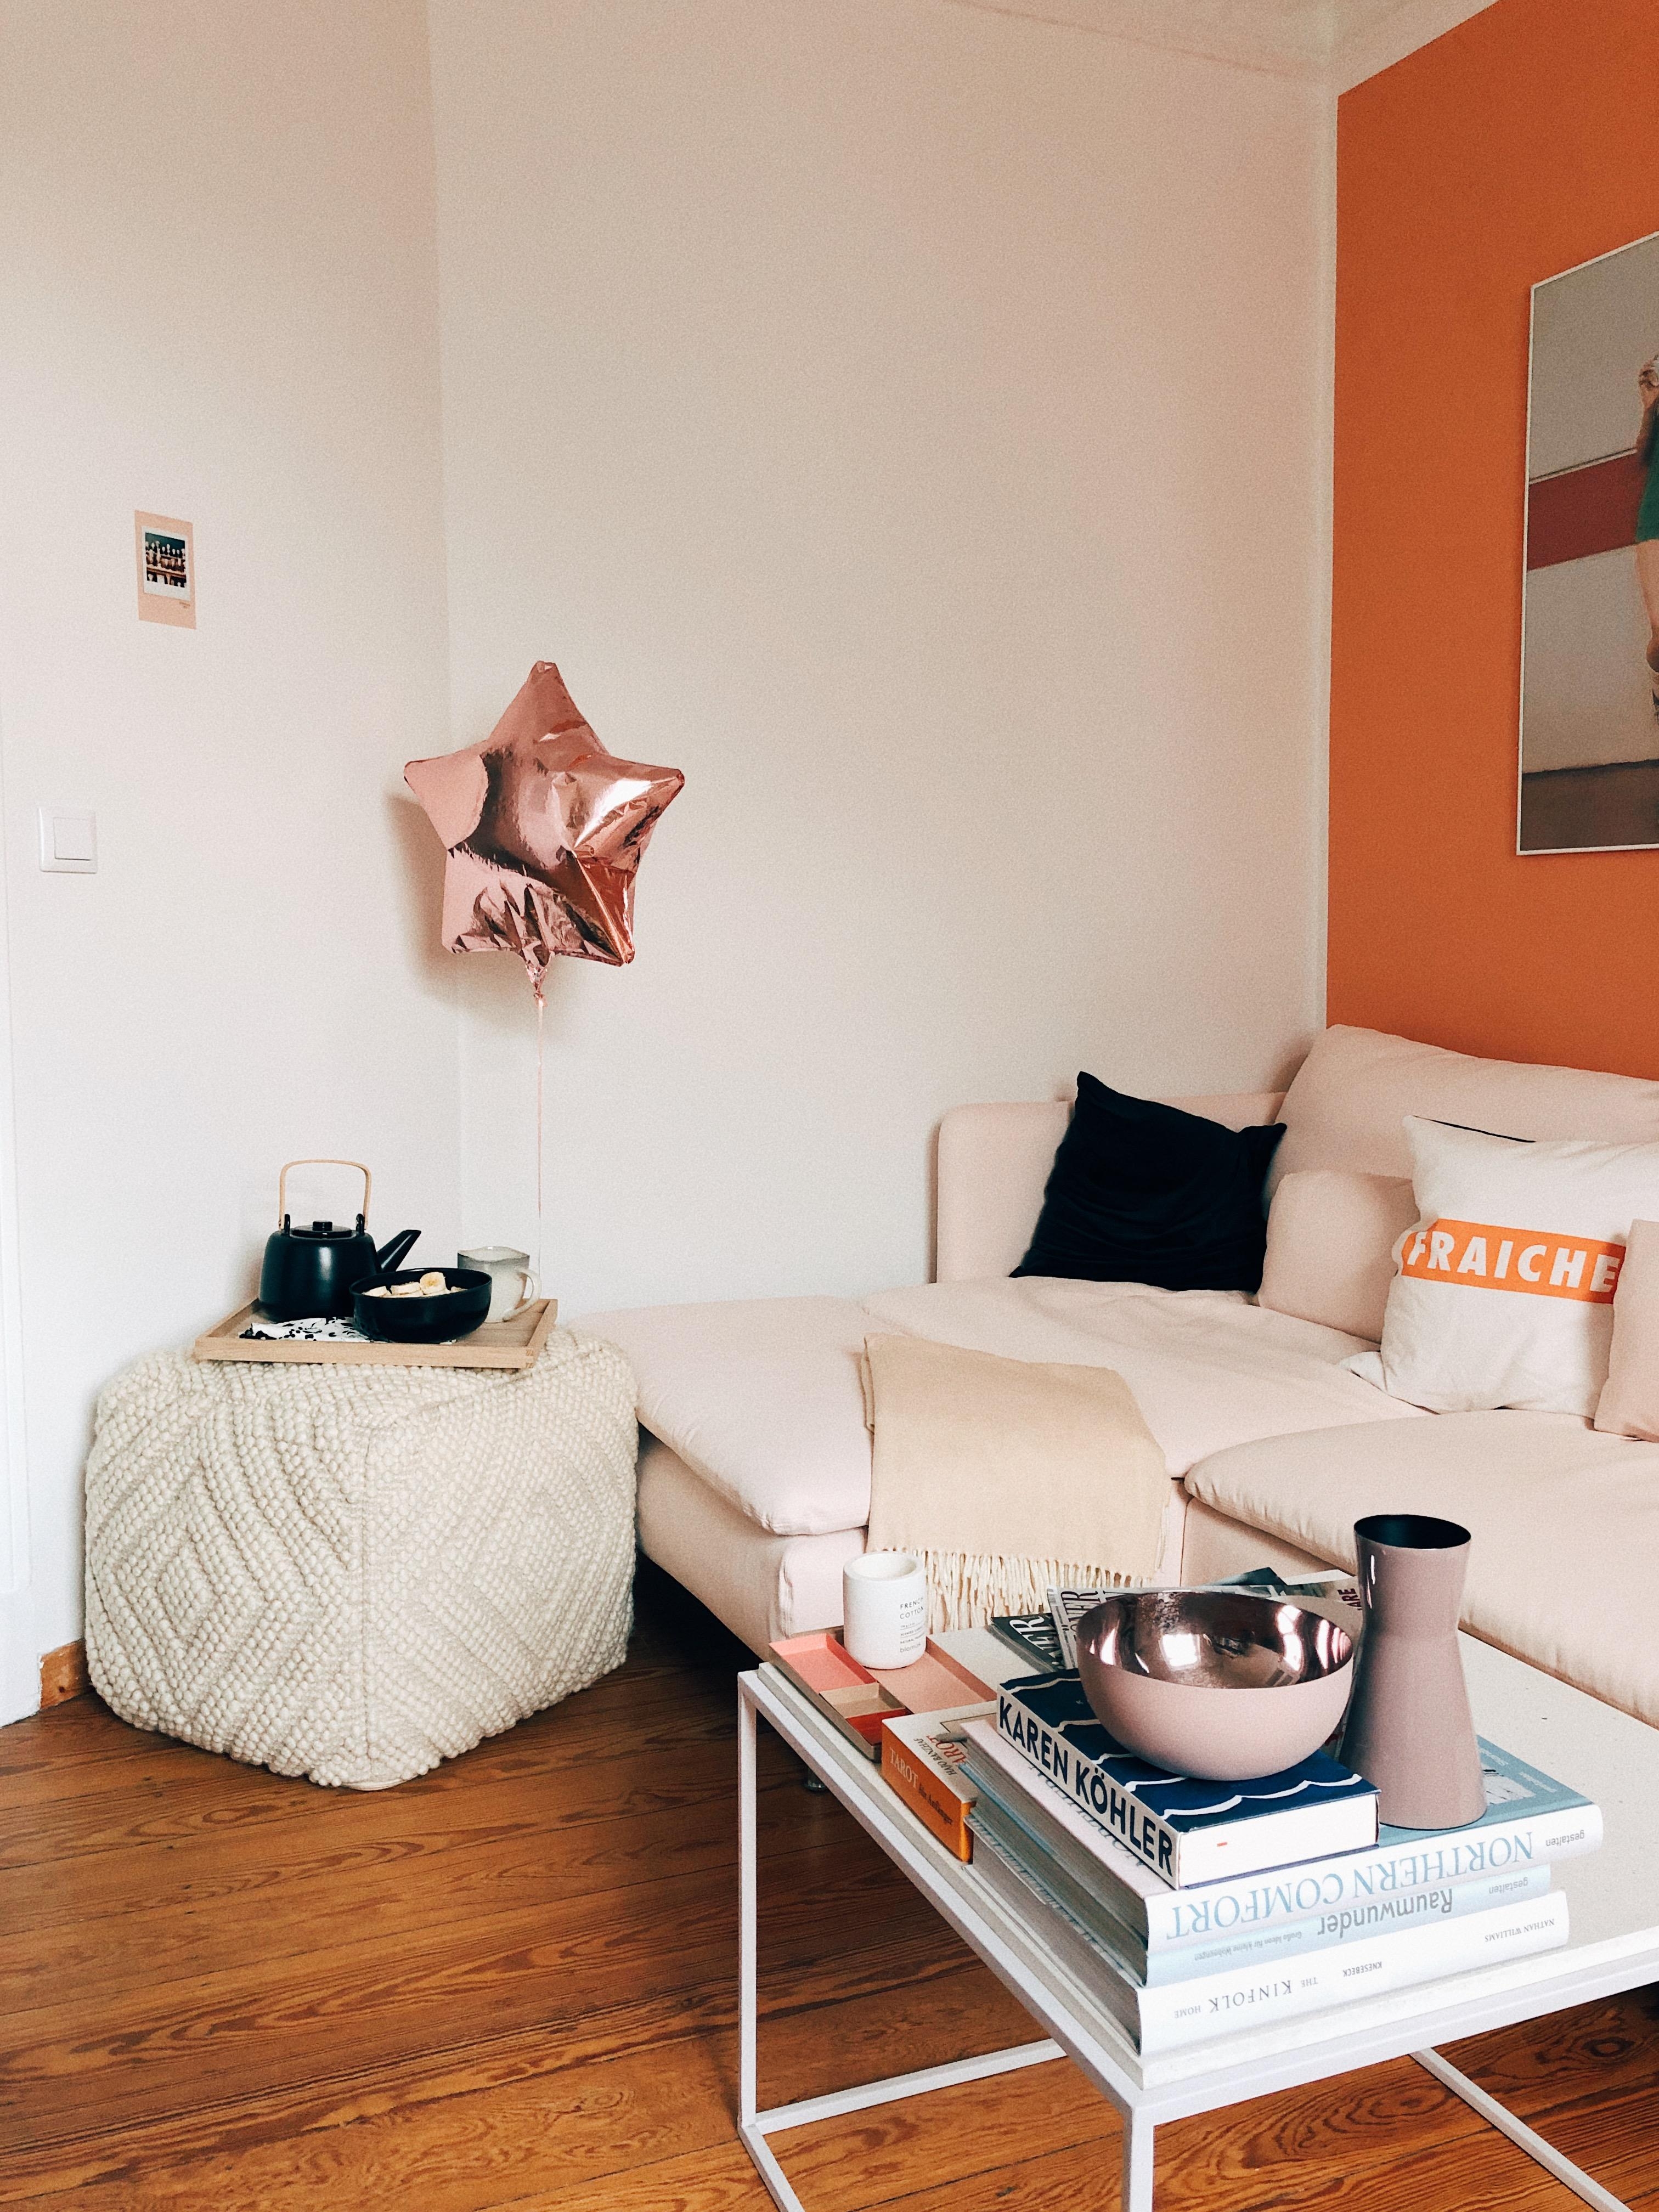 Bock auf (Tee)Party? #wohnzimmer #couchstyle #luftballon #couchtisch #dekoration #pouf #orange #rosa #wandfarbe #party